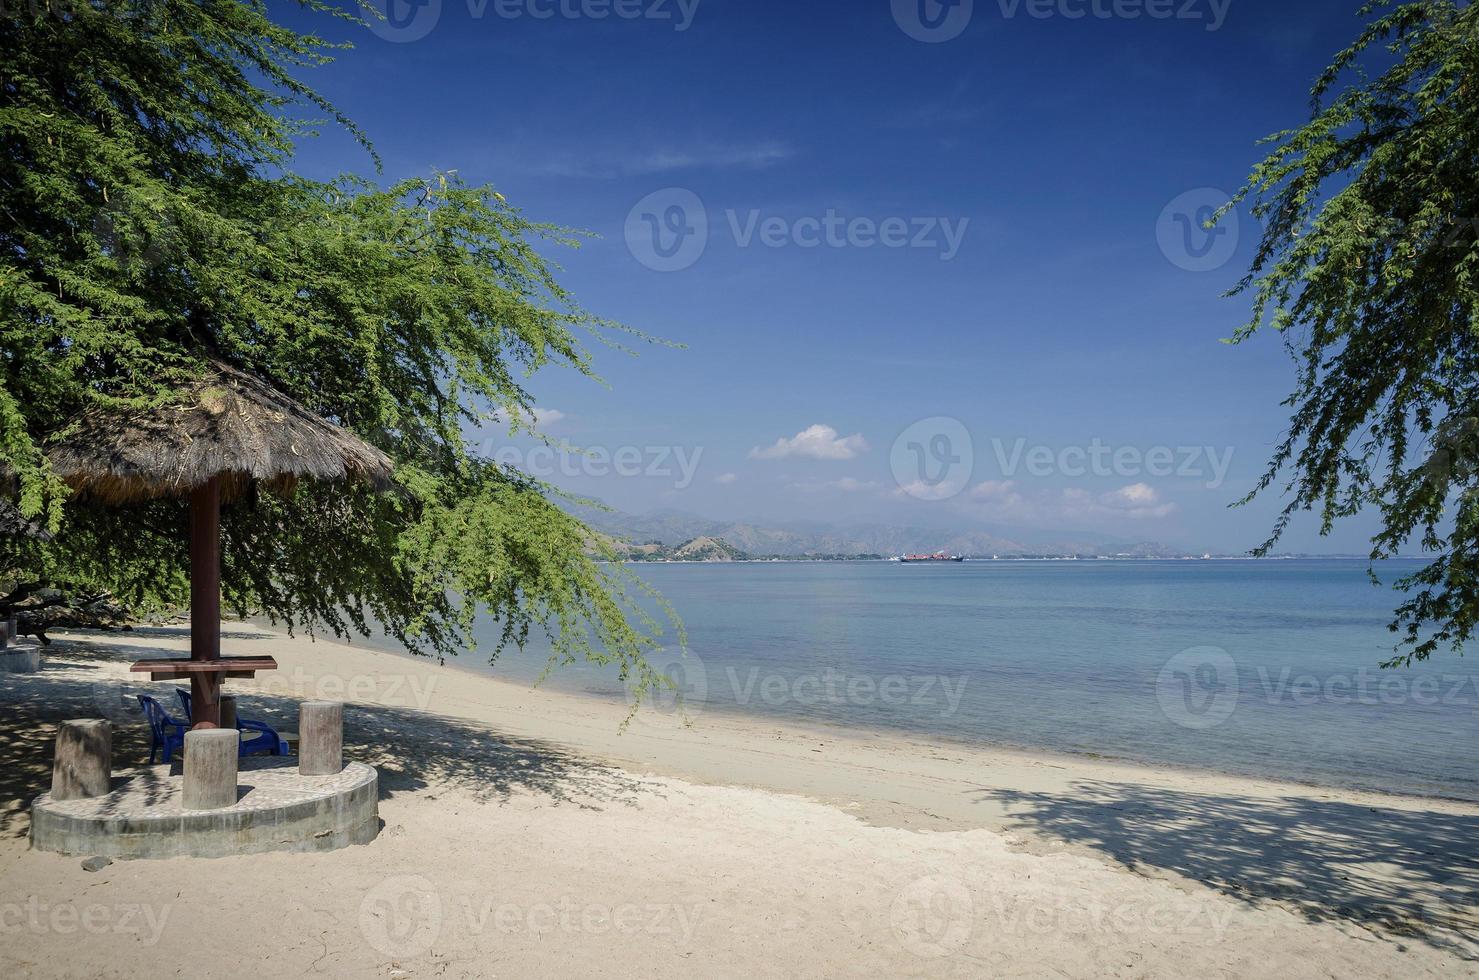 Areia branca vue sur la plage tropicale et la côte près de Dili au Timor oriental photo